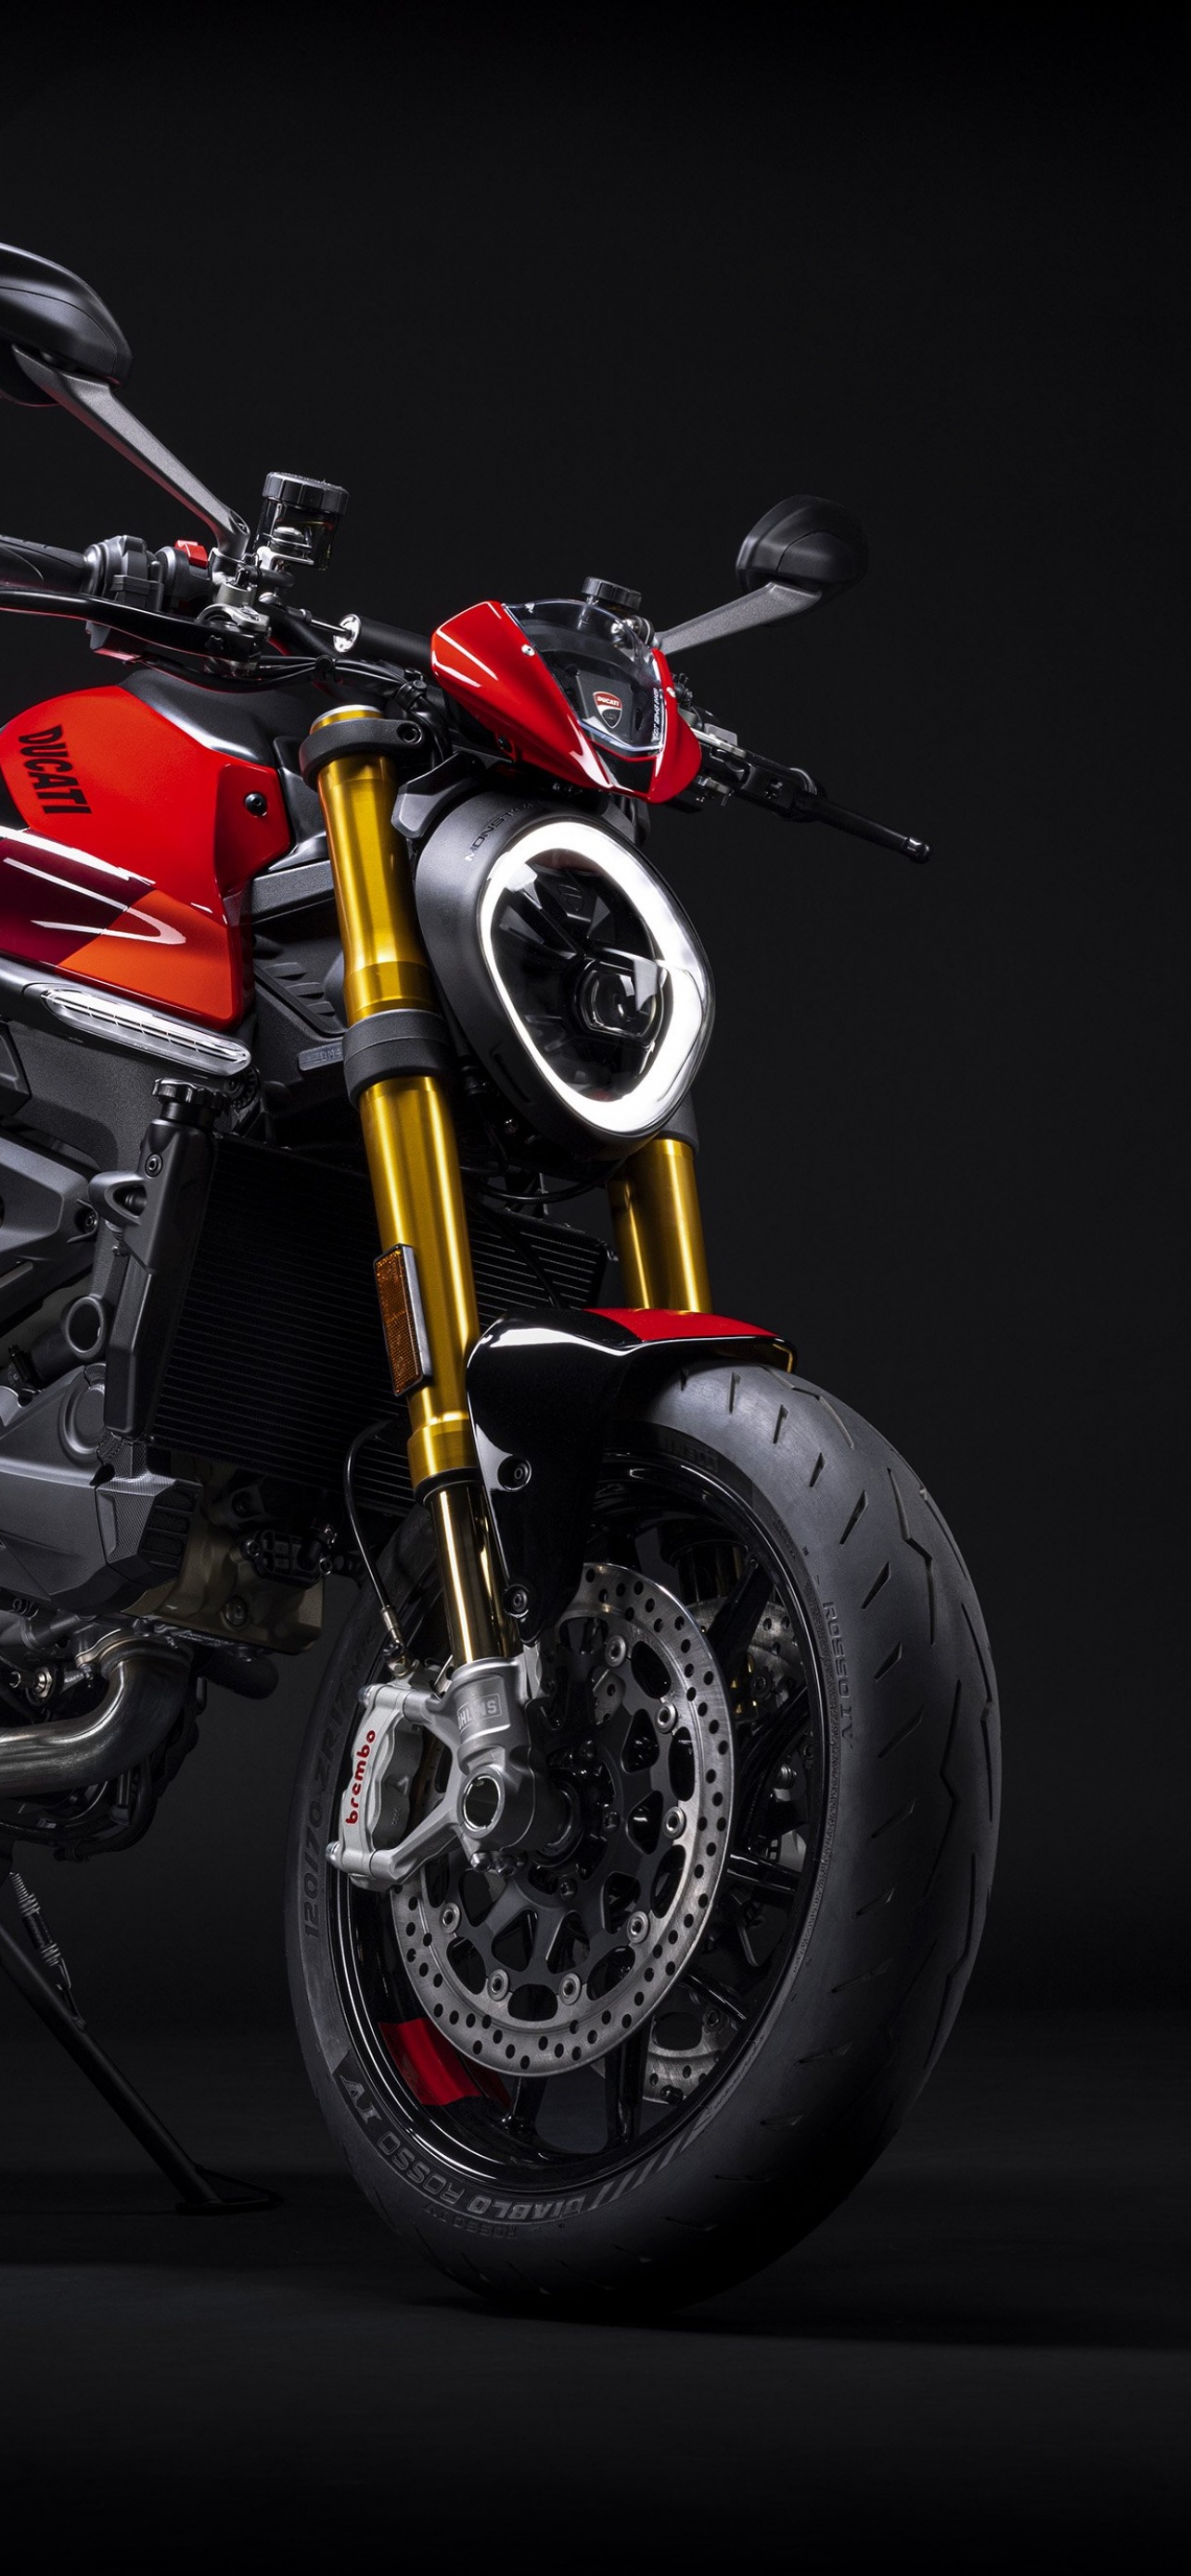 Xem hình ảnh Ducati Monster SP để trải nghiệm cảm giác lái xe đầy kích thích trên một siêu mô tô đẳng cấp. Những đường nét cứng cáp và khỏe khoắn kết hợp với khả năng vận hành tuyệt vời của chiếc xe sẽ chắc chắn làm bạn say đắm.